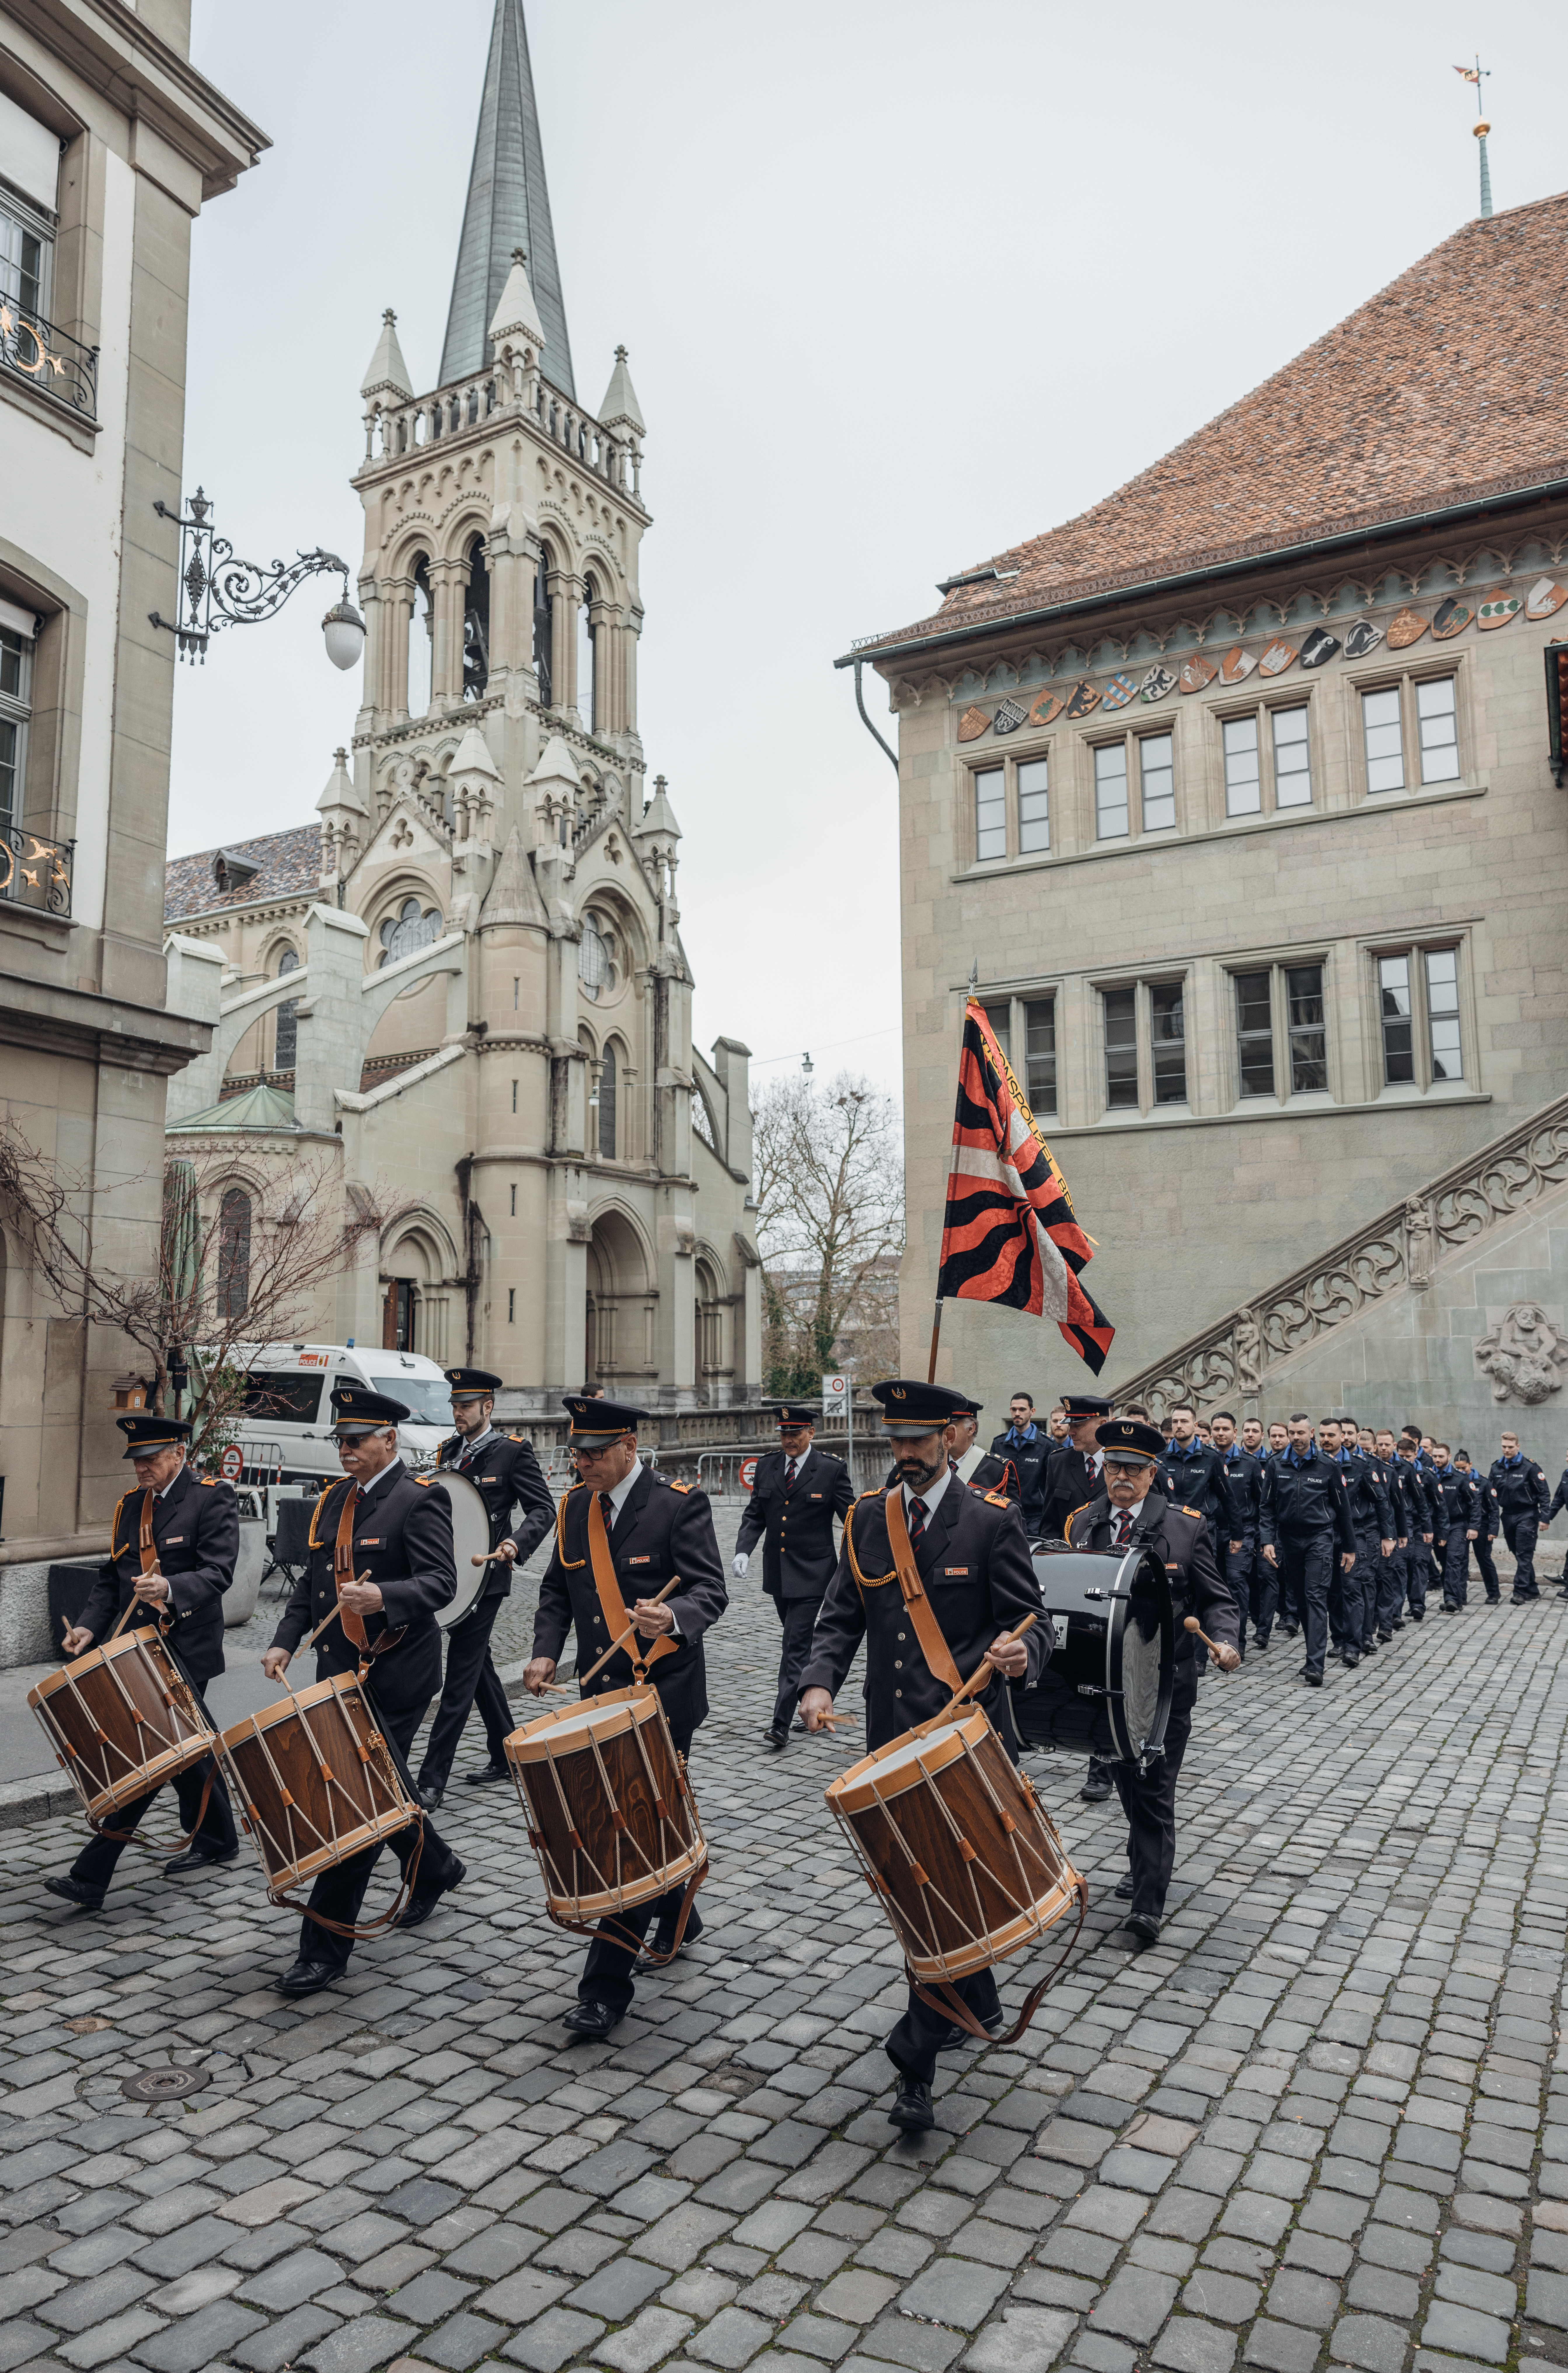 Par une poignée de main sur l'étendard, les 13 femmes et 33 hommes ont été symboliquement admis dans le corps de la Police cantonale bernoise.